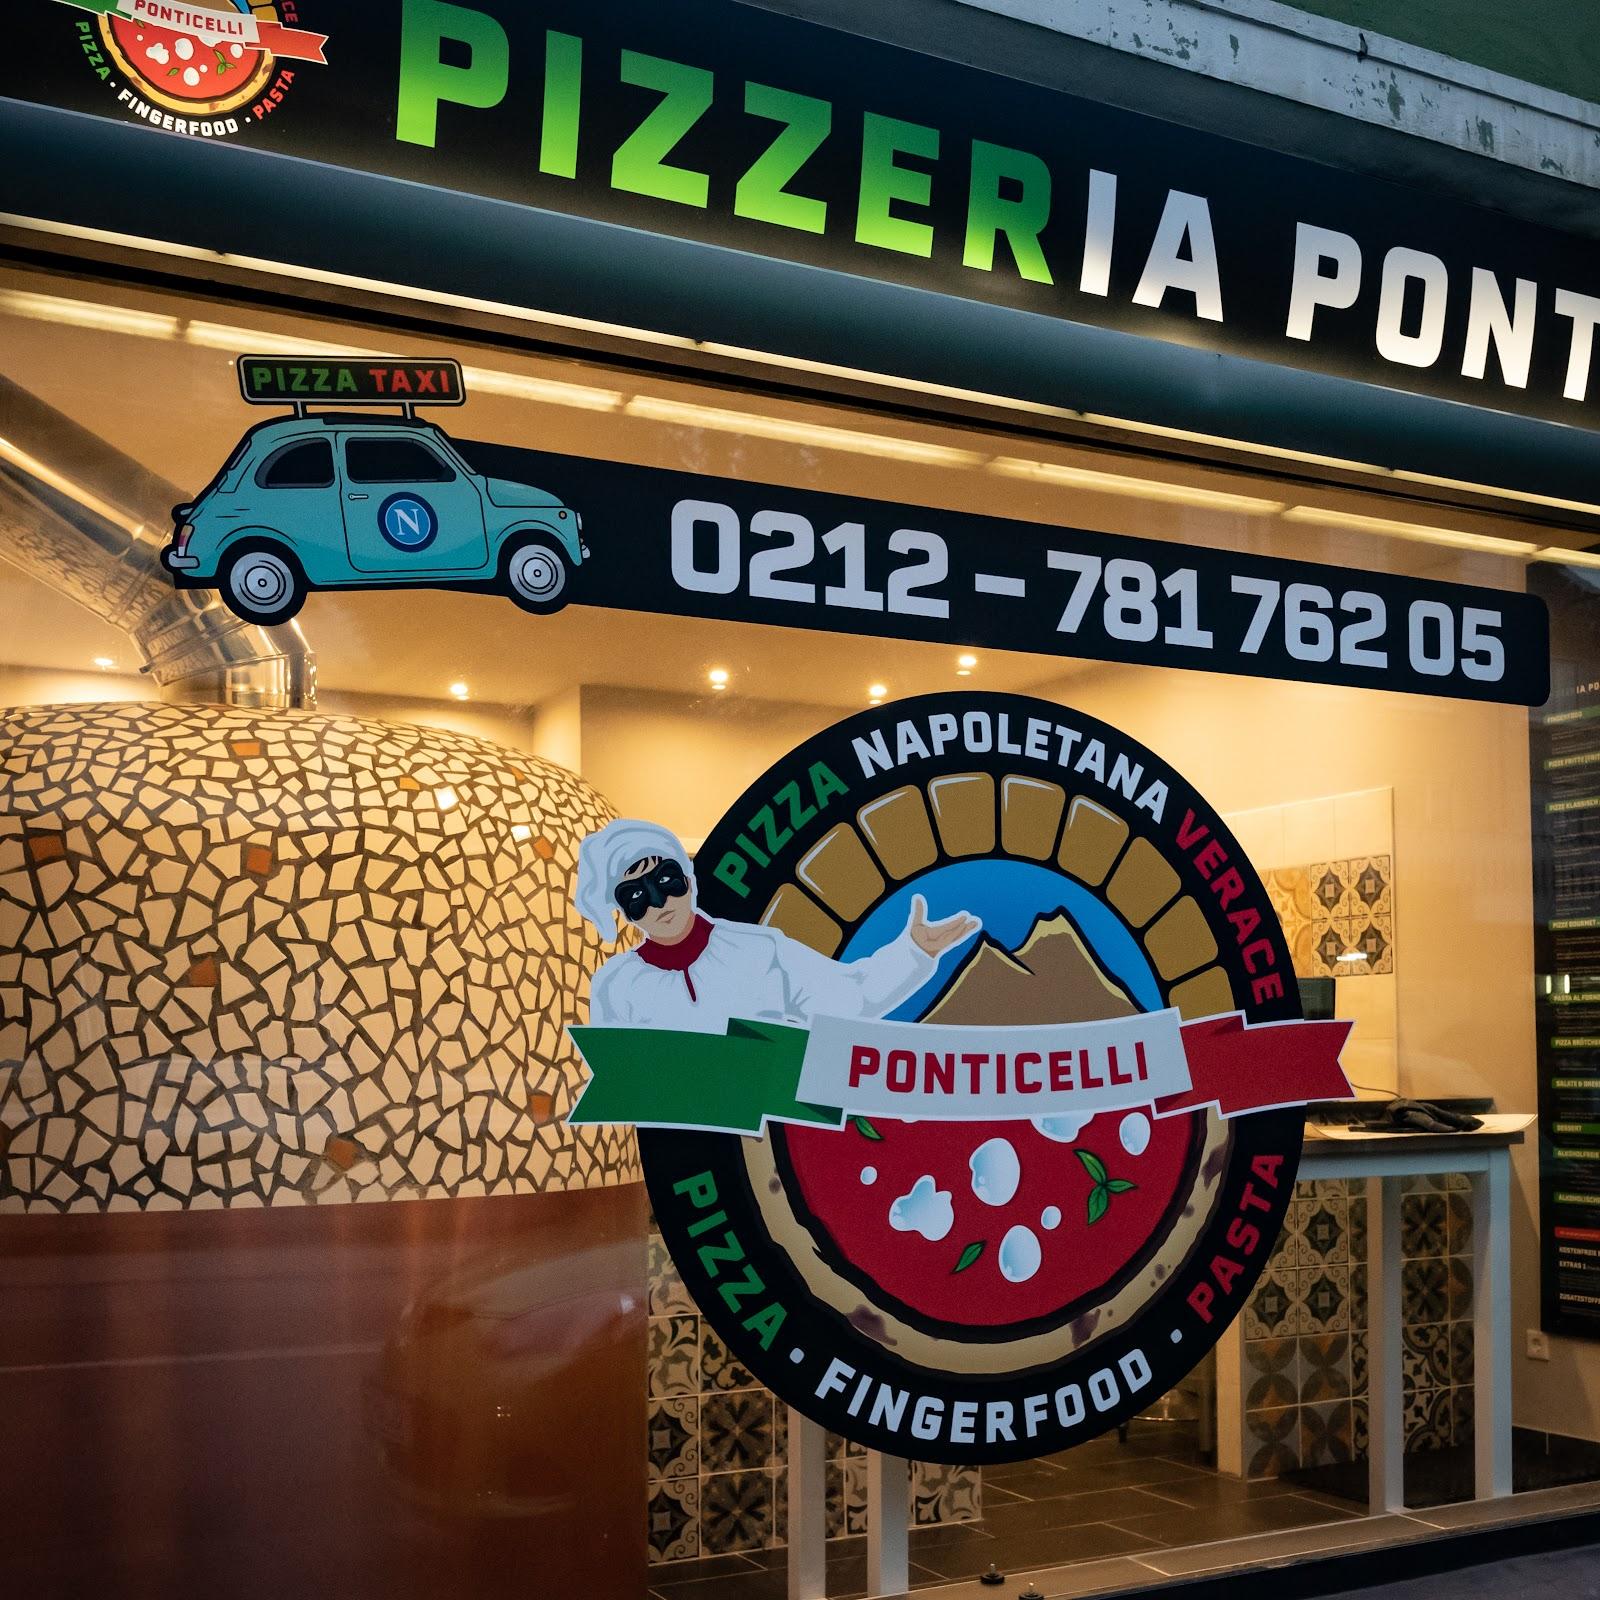 Restaurant "Pizzeria Ponticelli" in Solingen